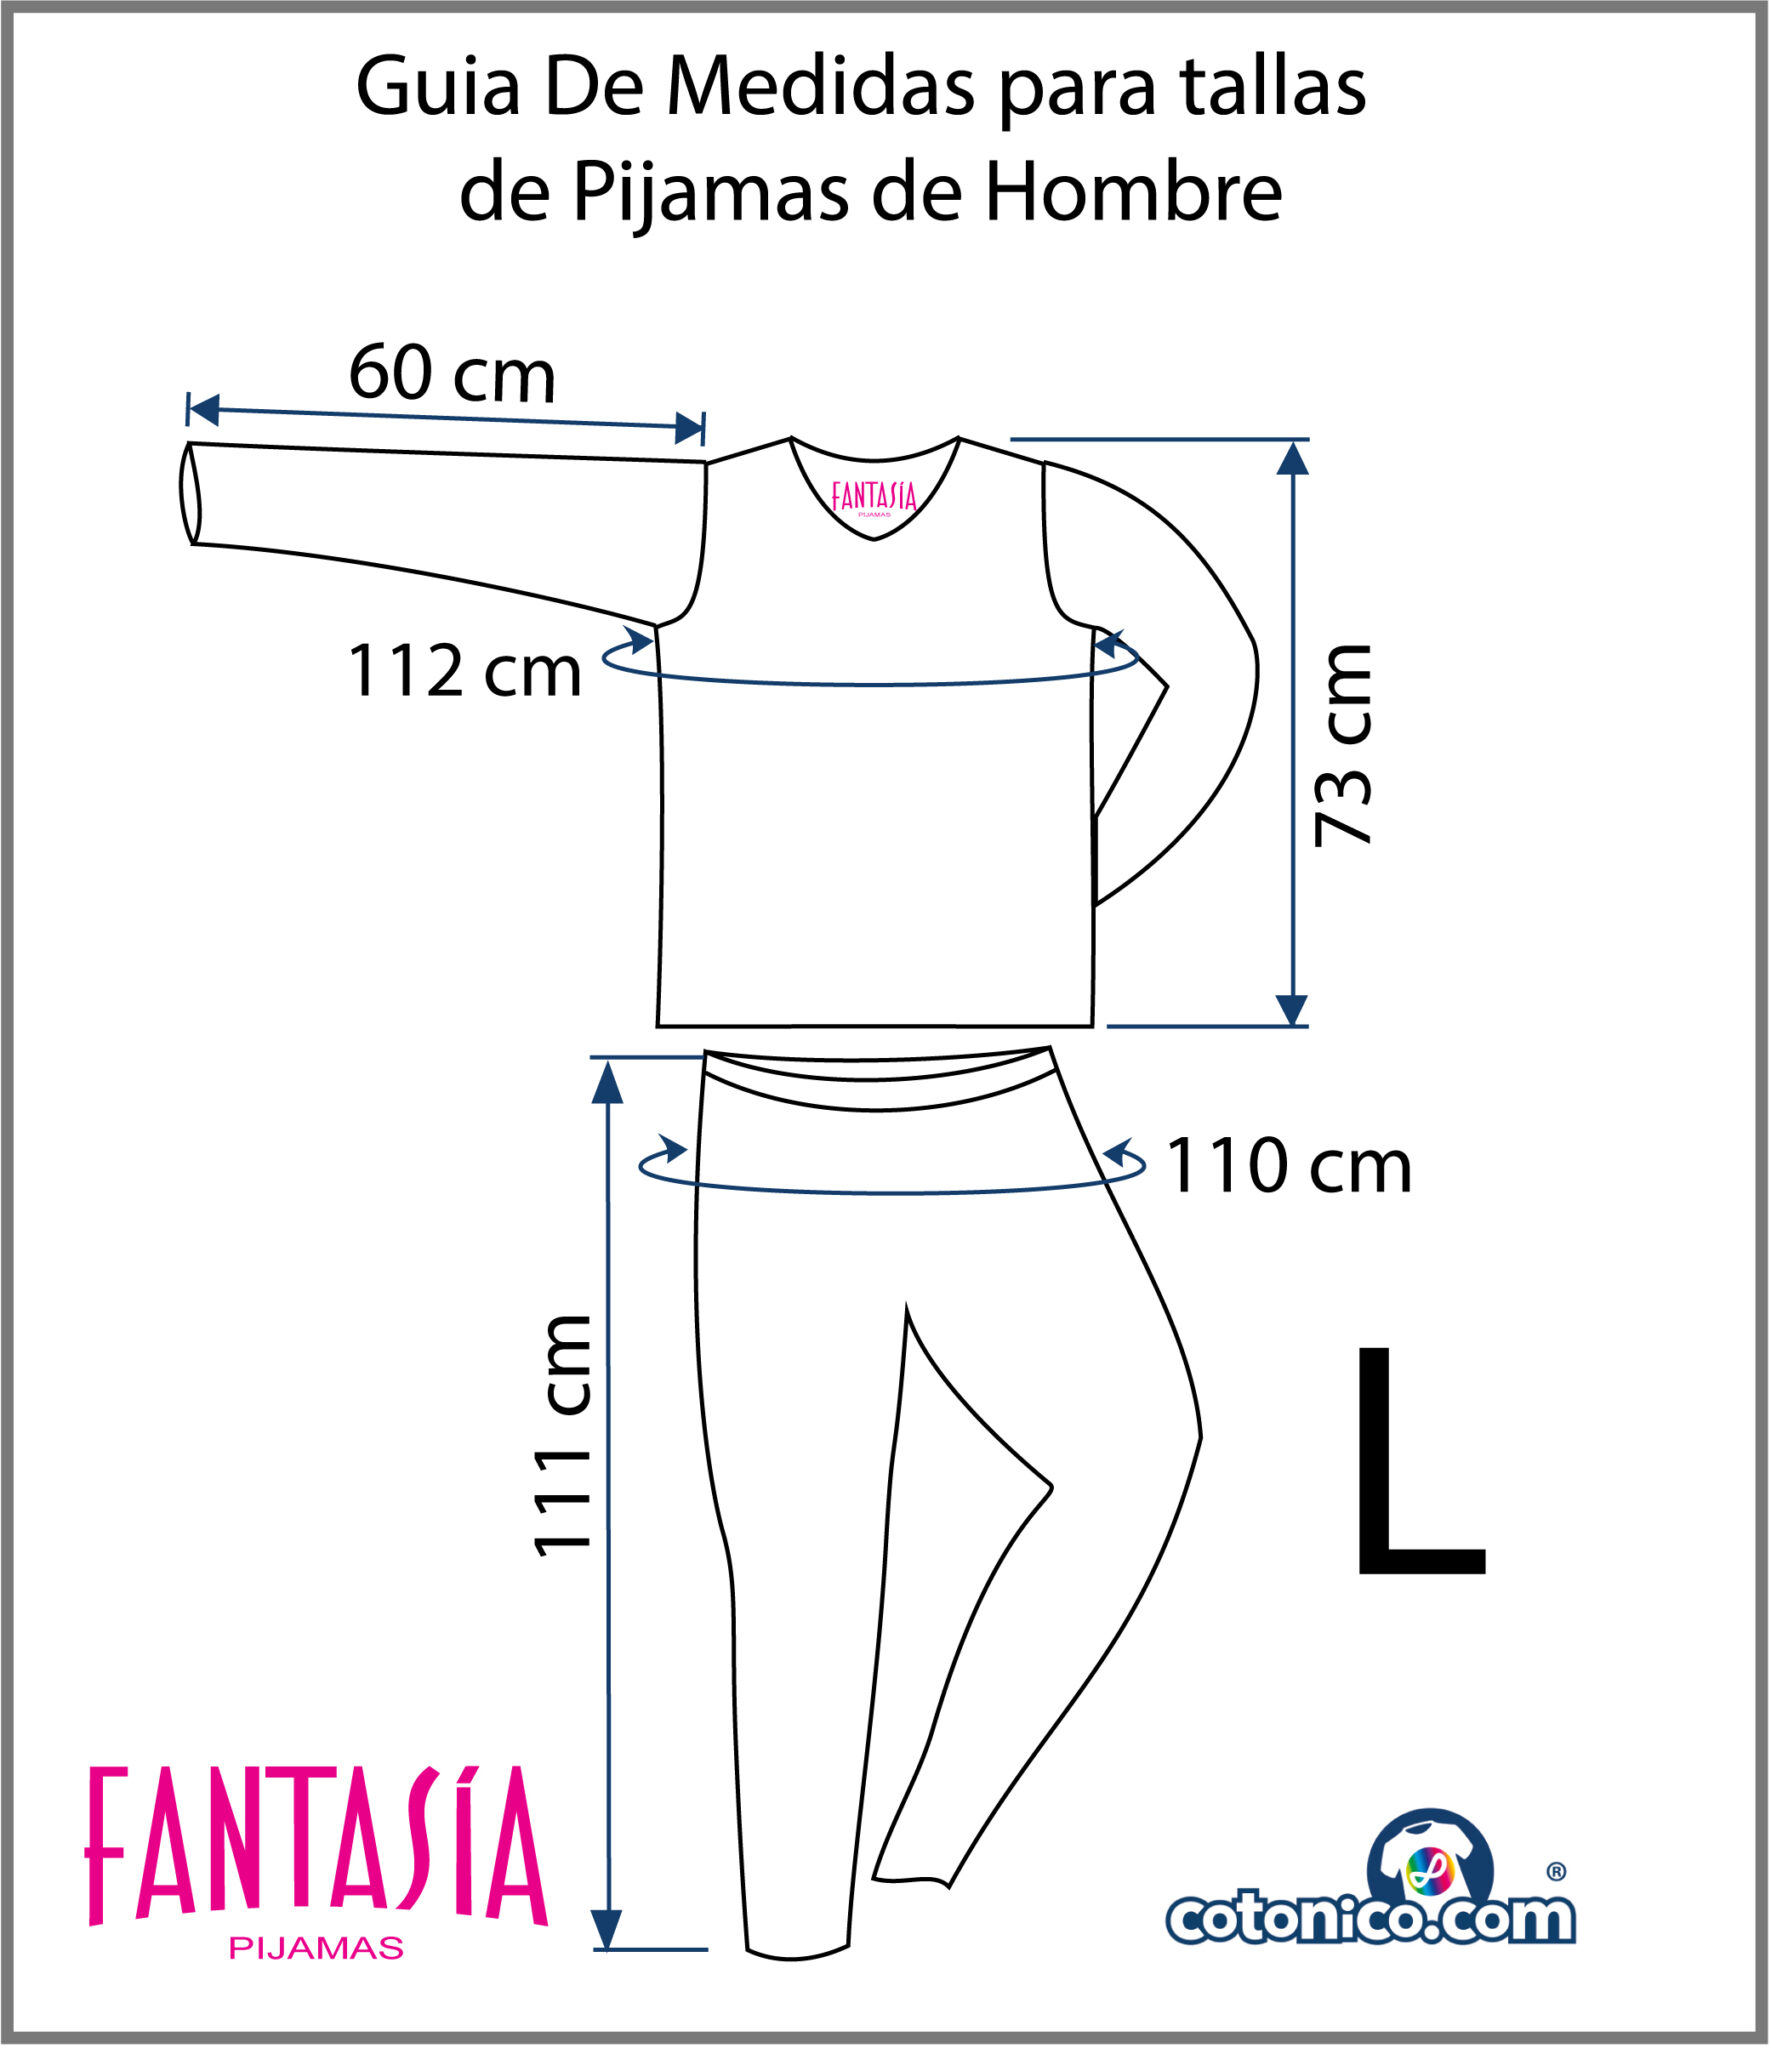 Guia-De-Tallas-Pijamas-De-Hombre-L